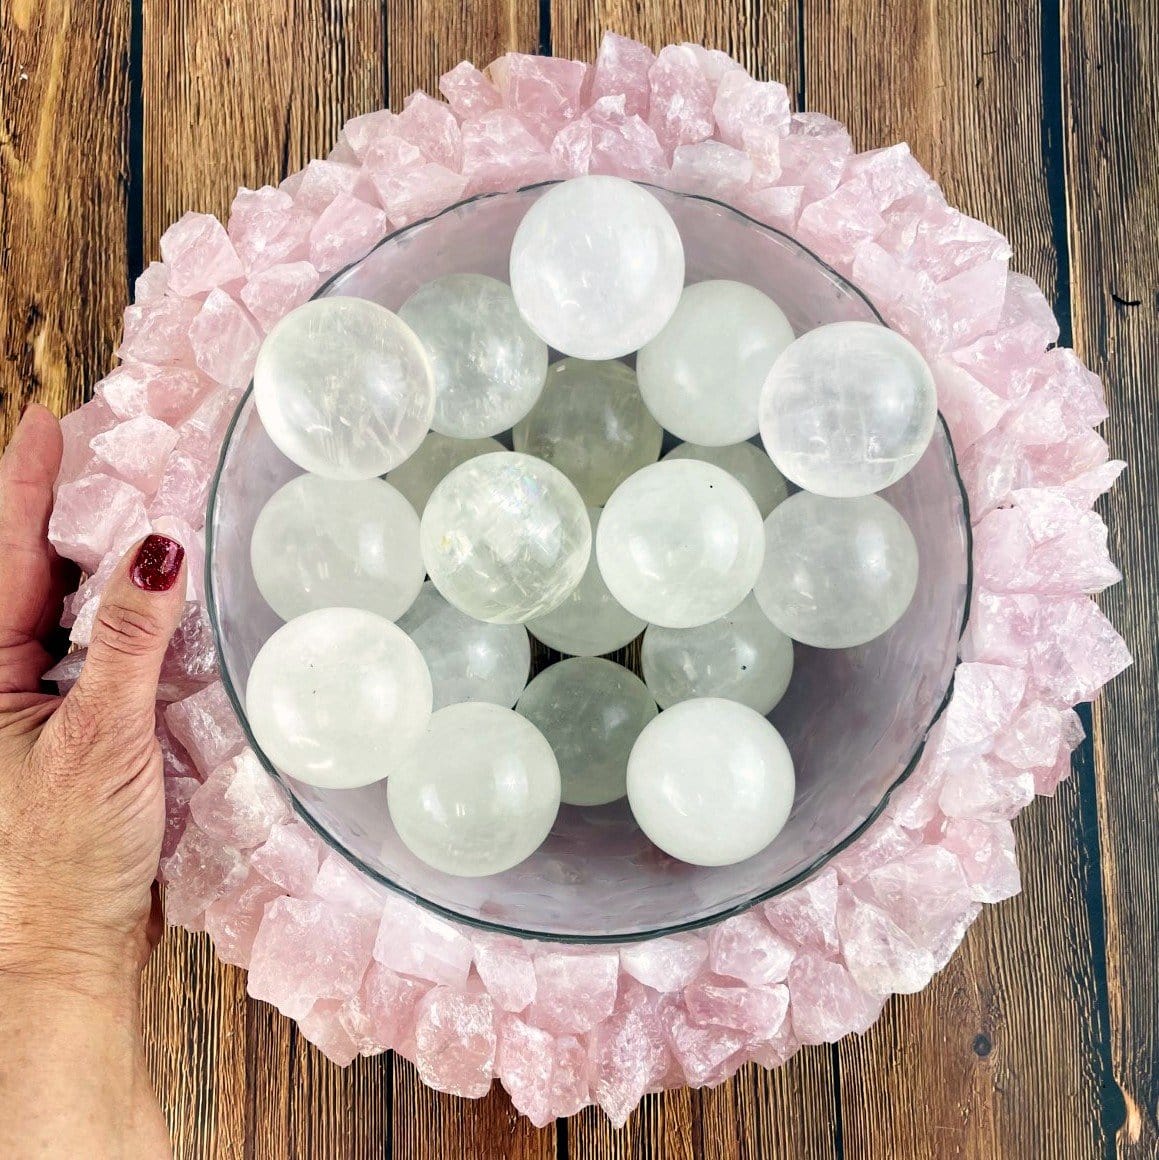 rose quartz bowl with spheres in it